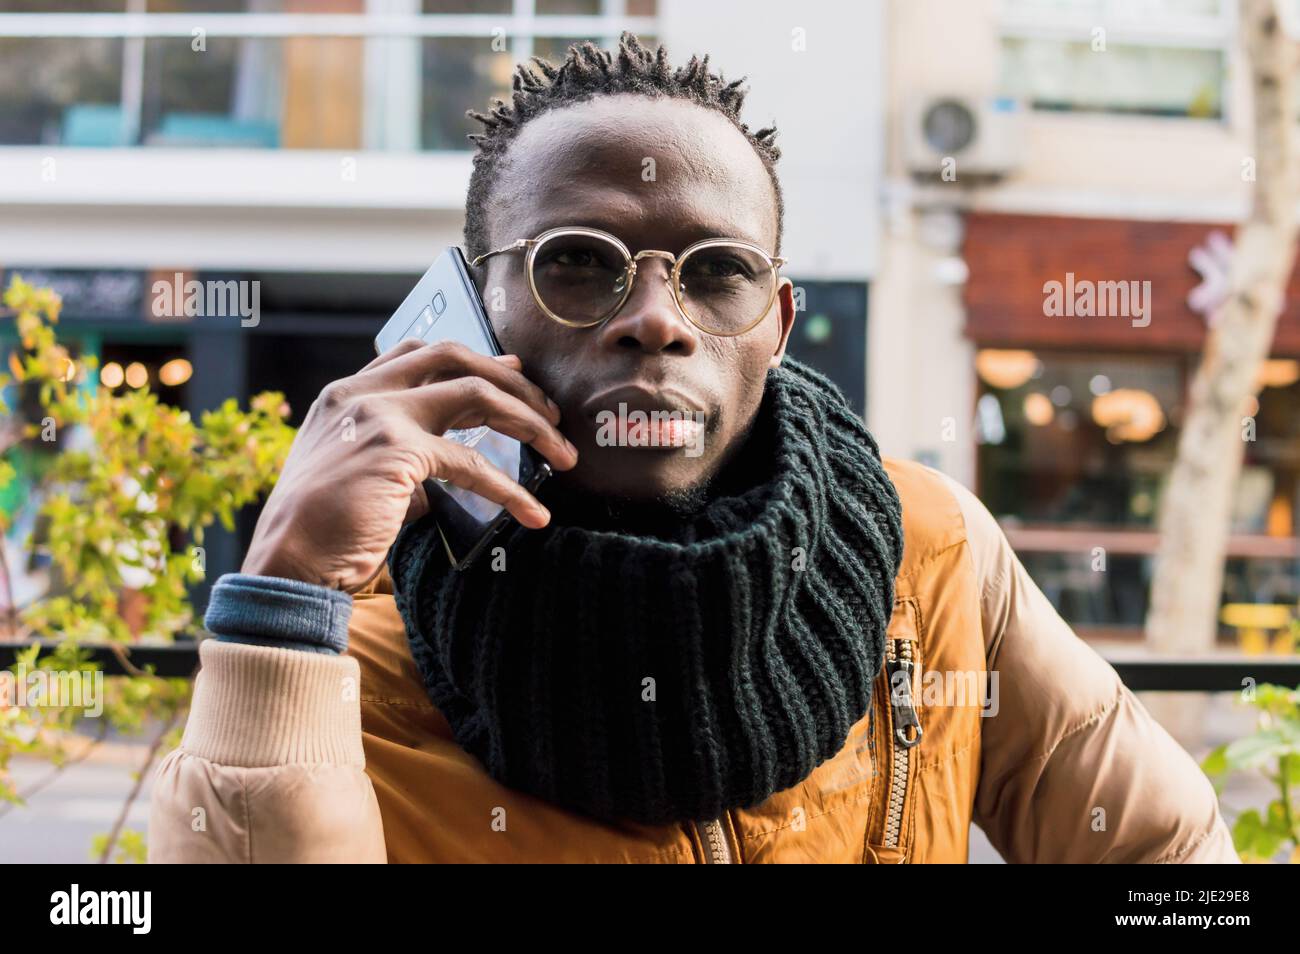 ritratto giovane uomo africano seduto all'aperto con sciarpa nera, giacca color senape e occhiali che parlano al telefono all'aperto con locale commerciale Foto Stock